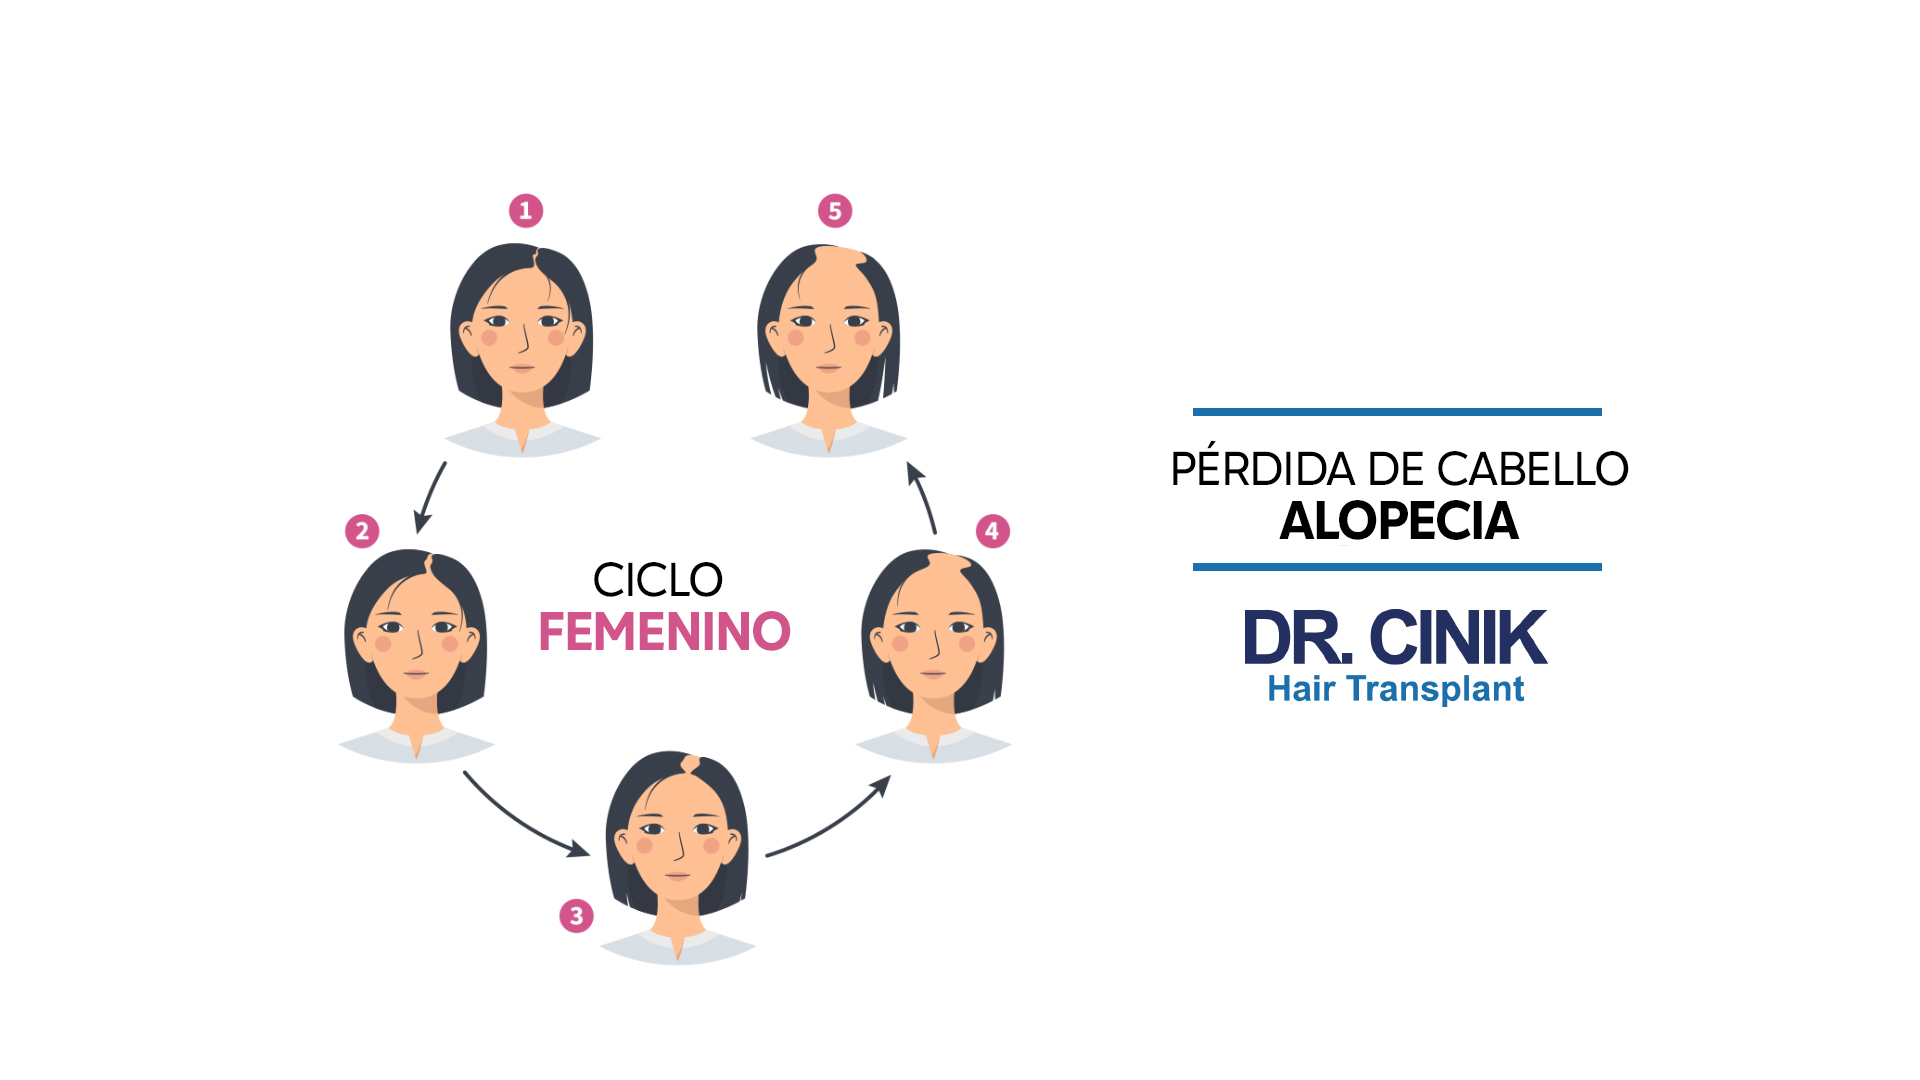 Ilustración que muestra las etapas de la alopecia de patrón femenino titulada "CICLO FEMENINO". Cinco retratos de una mujer, numerados del 1 al 5, muestran la progresión de la pérdida de cabello desde un cabello completo hasta una alopecia avanzada. Las flechas indican el flujo desde una etapa a la siguiente. En la parte superior derecha, las palabras "PÉRDIDA DE CABELLO ALOPECIA" y el logo "DR. CINIK Hair Transplant" están presentes. El fondo es blanco y los retratos y textos están en colores negro, rosa y azul.